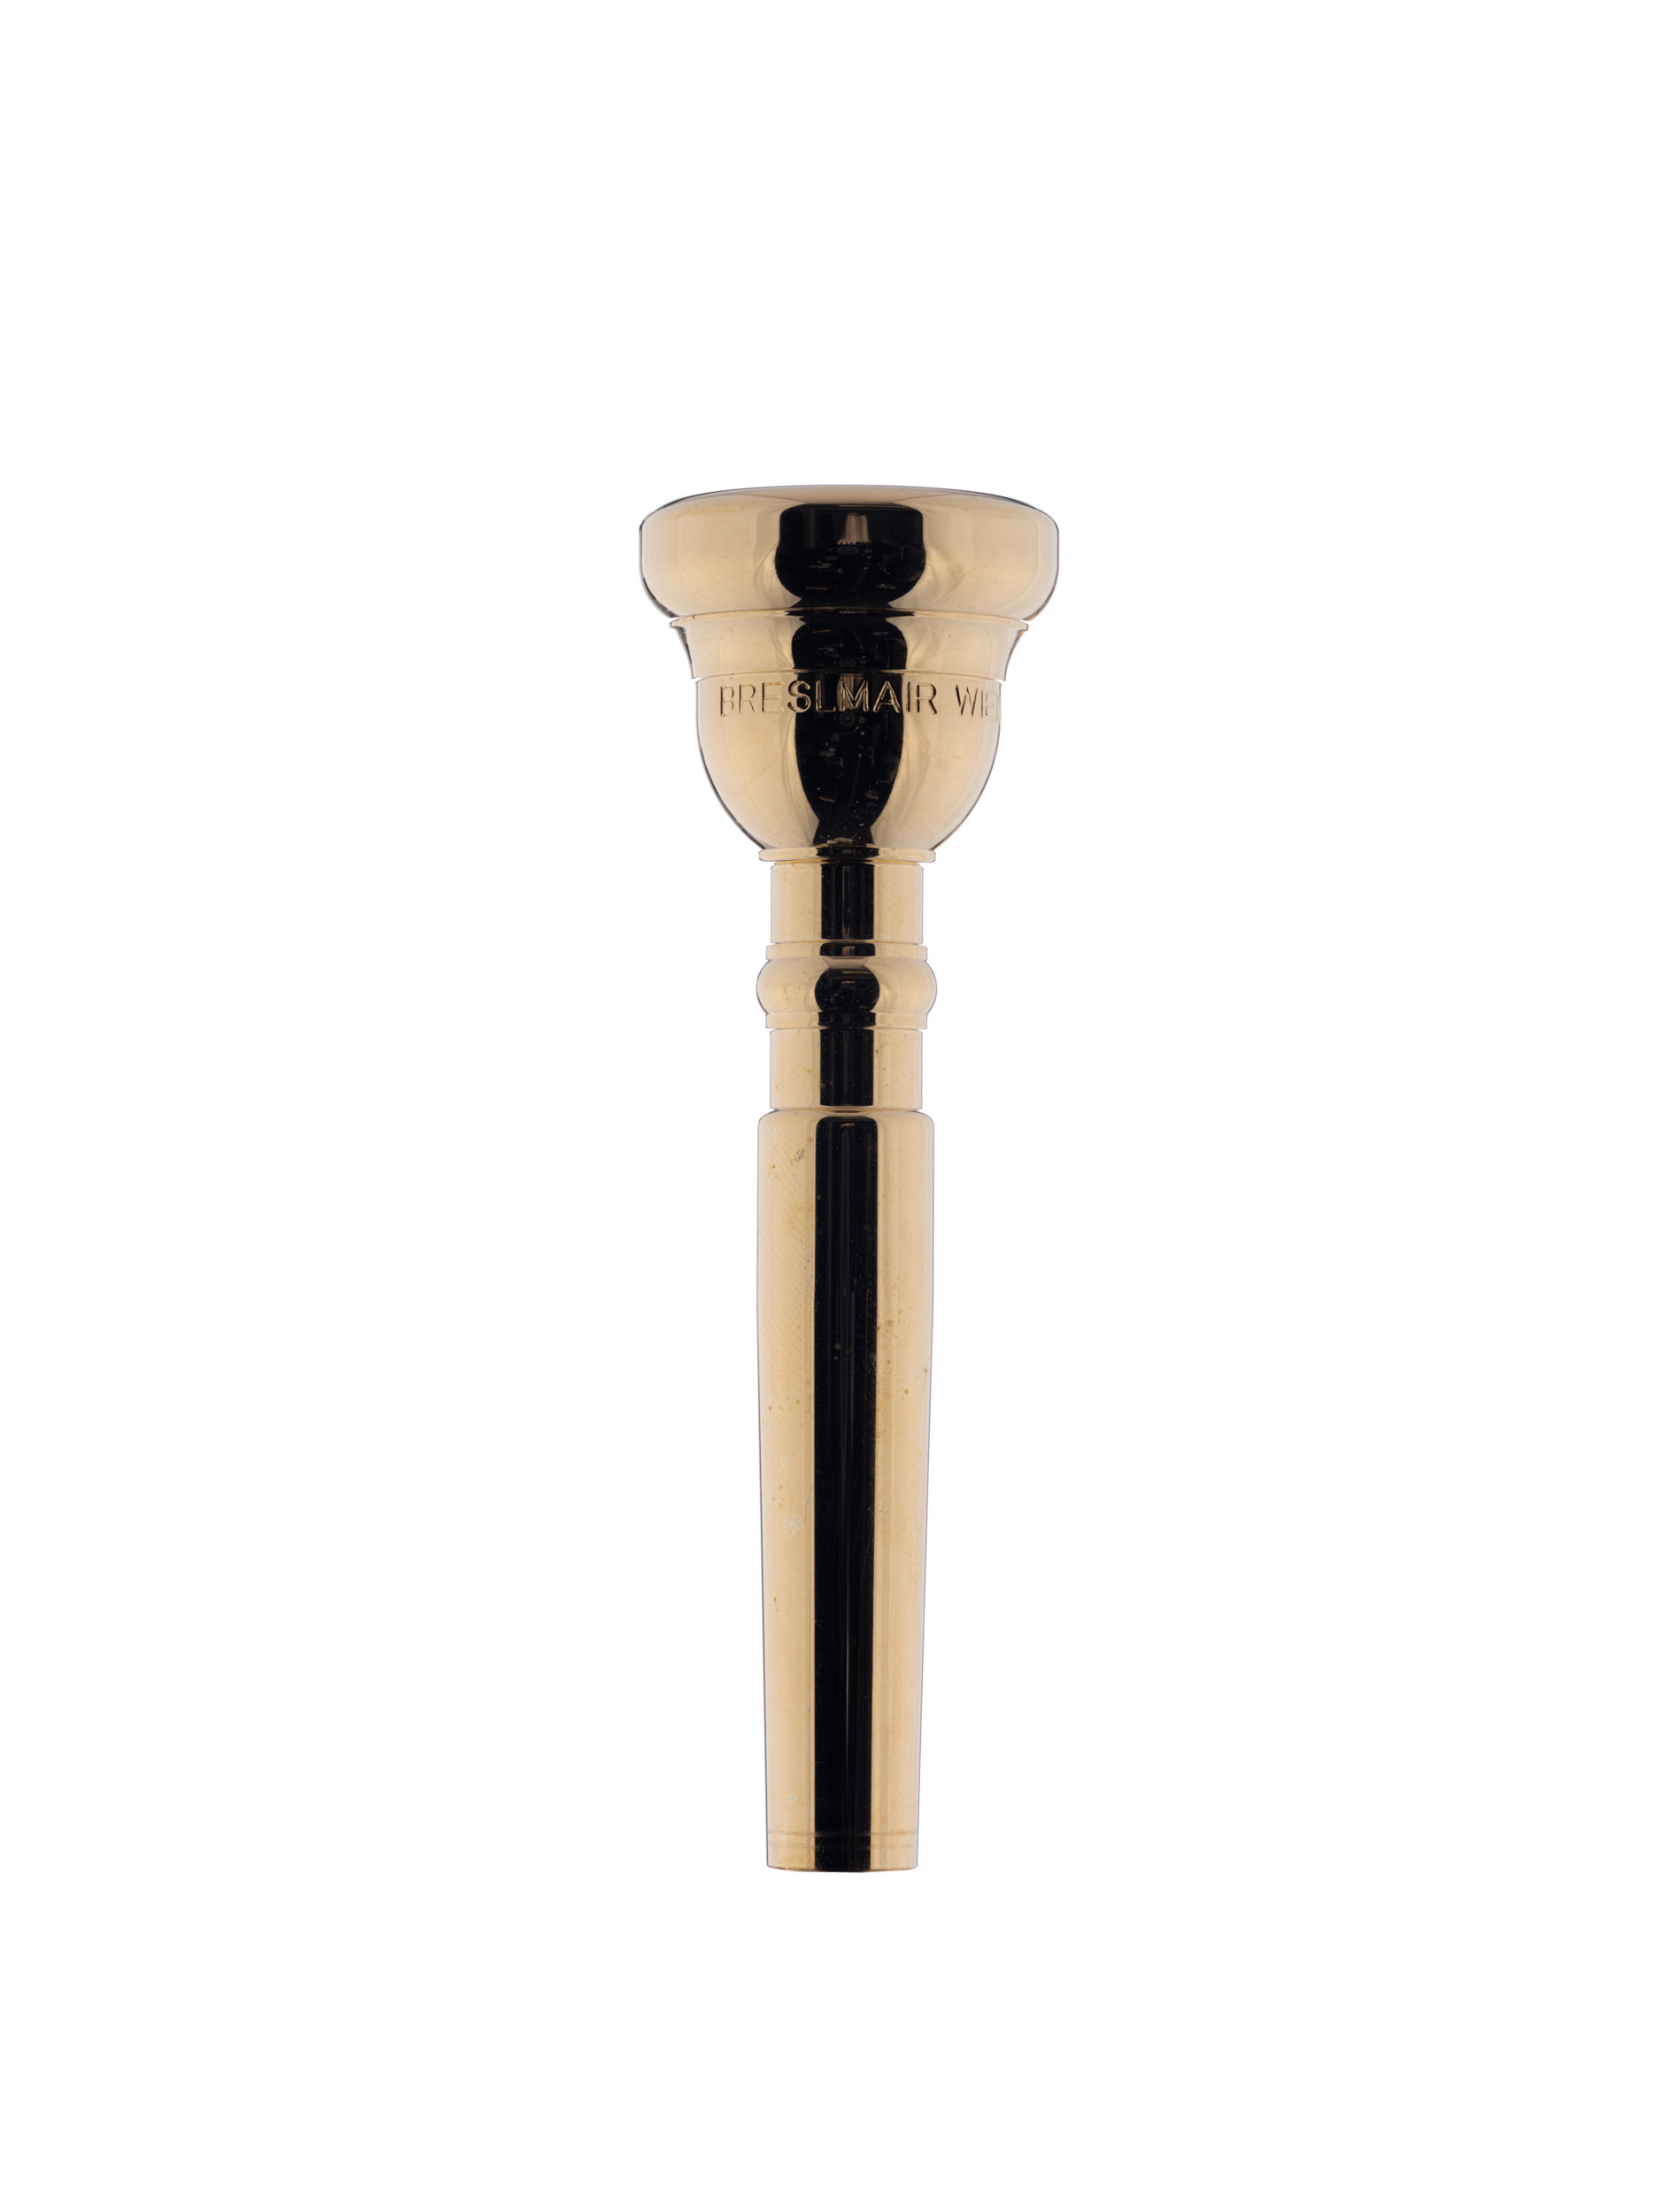 Breslmair Trumpet Mouthpiece TP2 gold plated